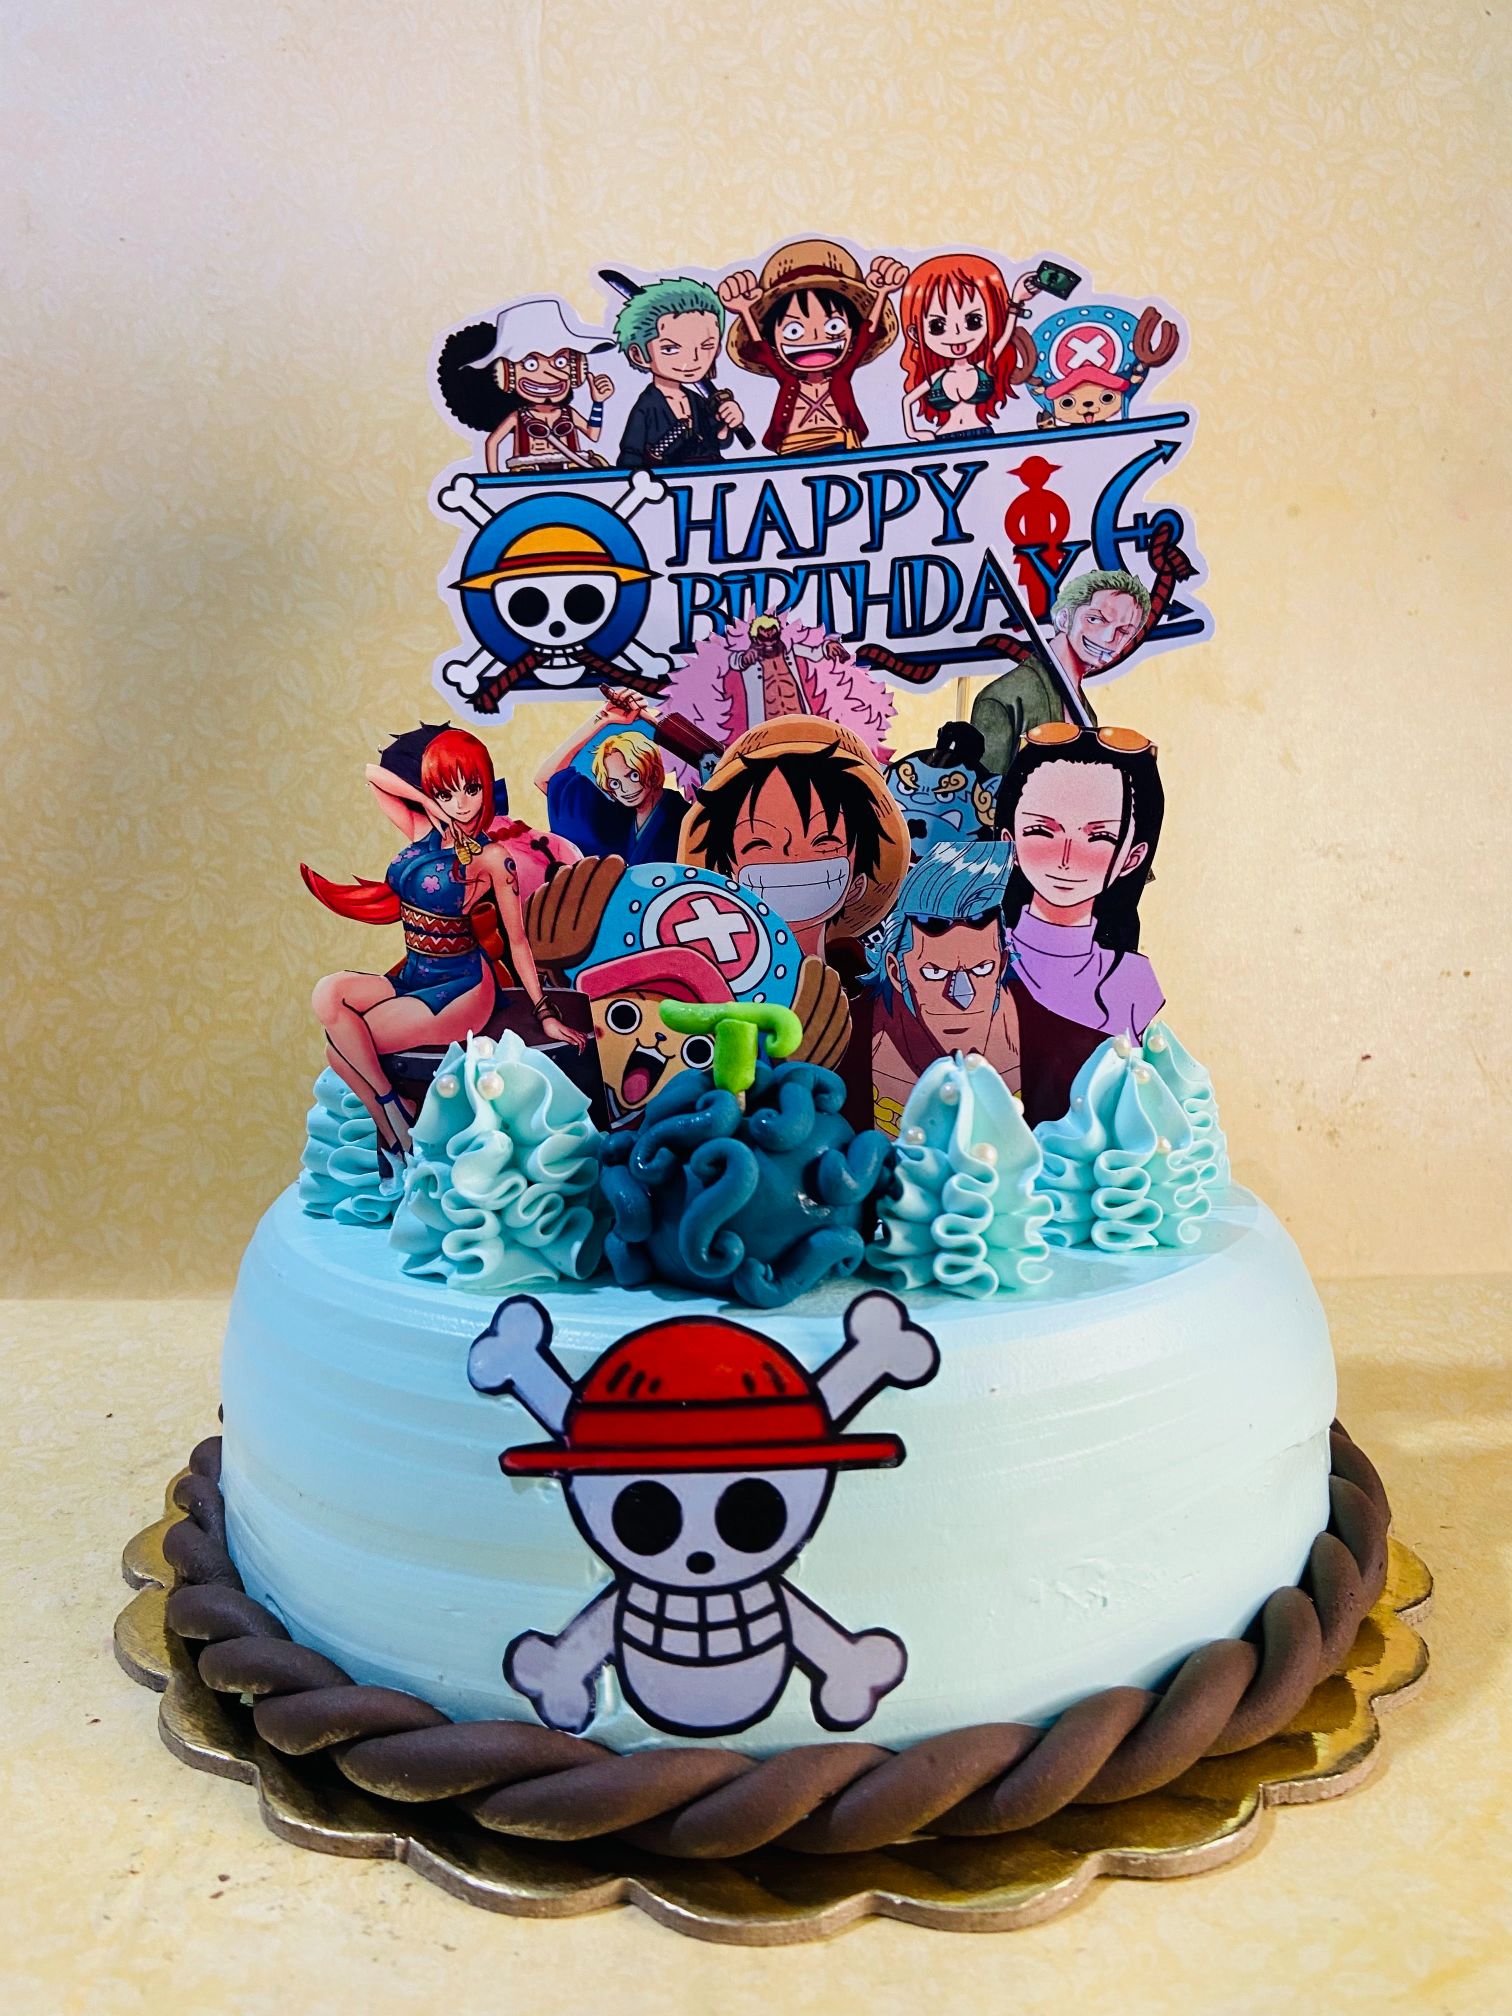 samurai cake topper - Google Images | Cake topper wedding couple, Anime  wedding, Wedding cake toppers